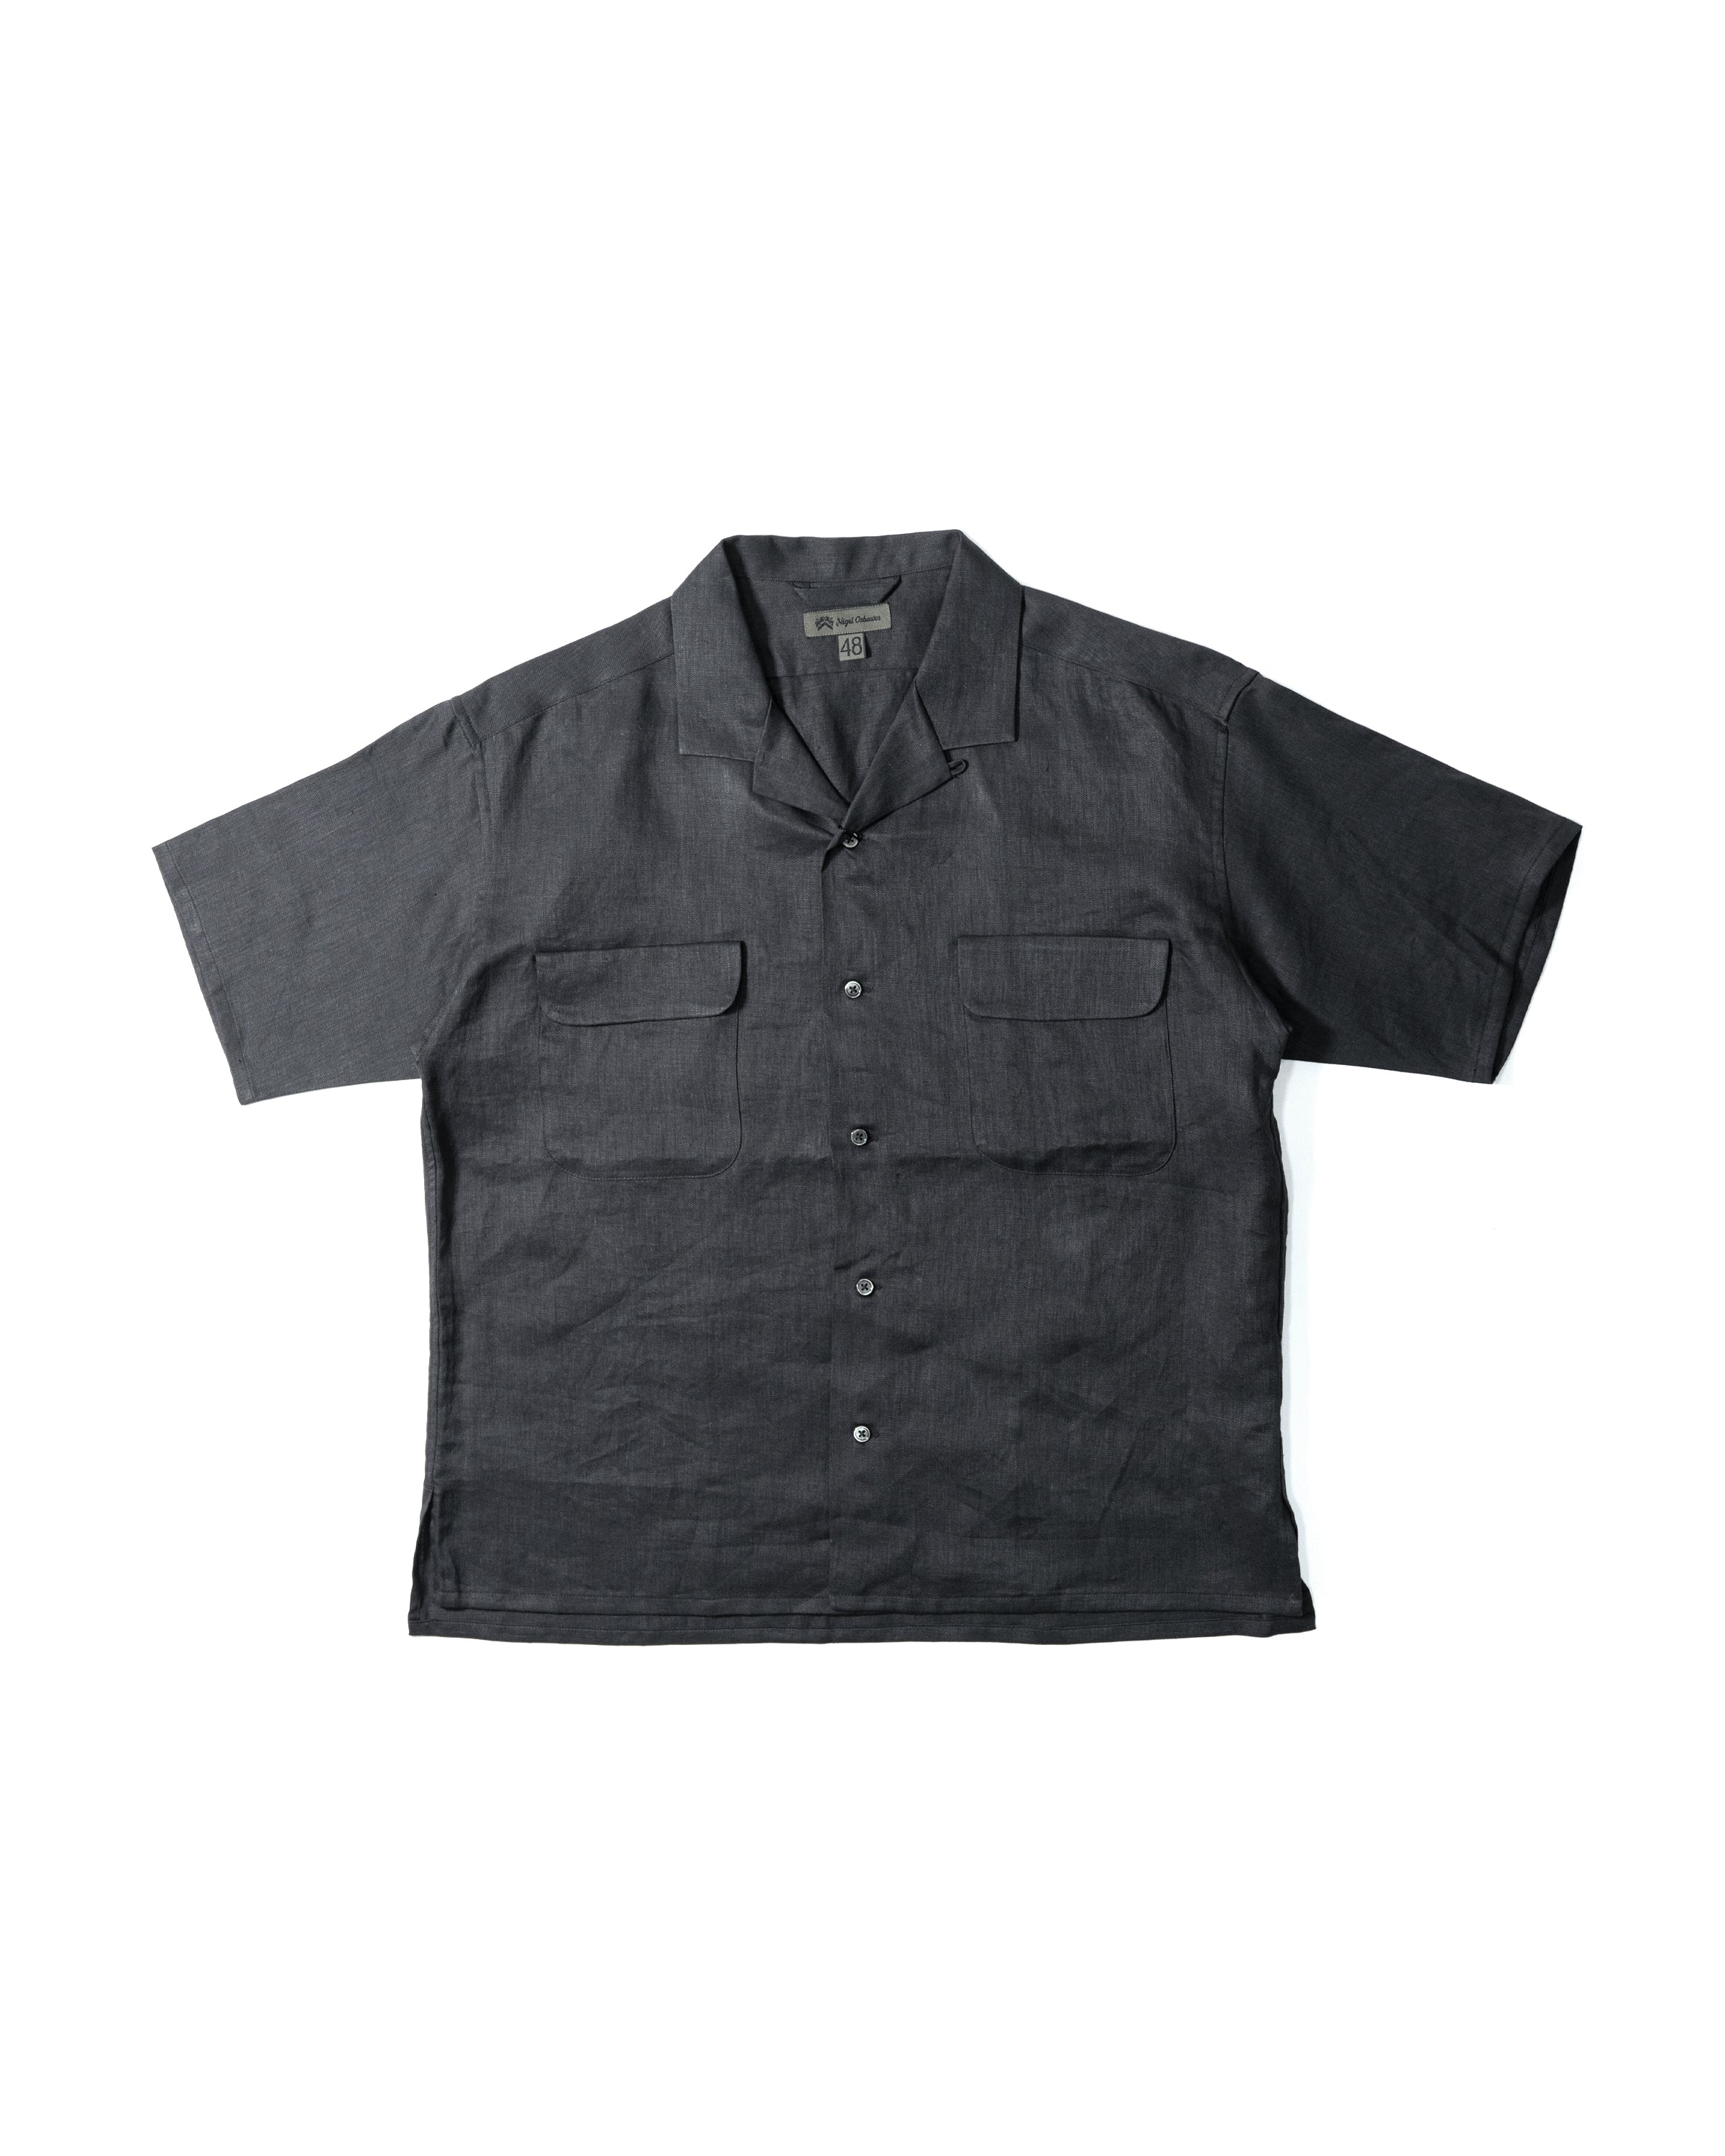 Open Collar Shirt Linen Twill 80460011005-1 | Charcoal Gray